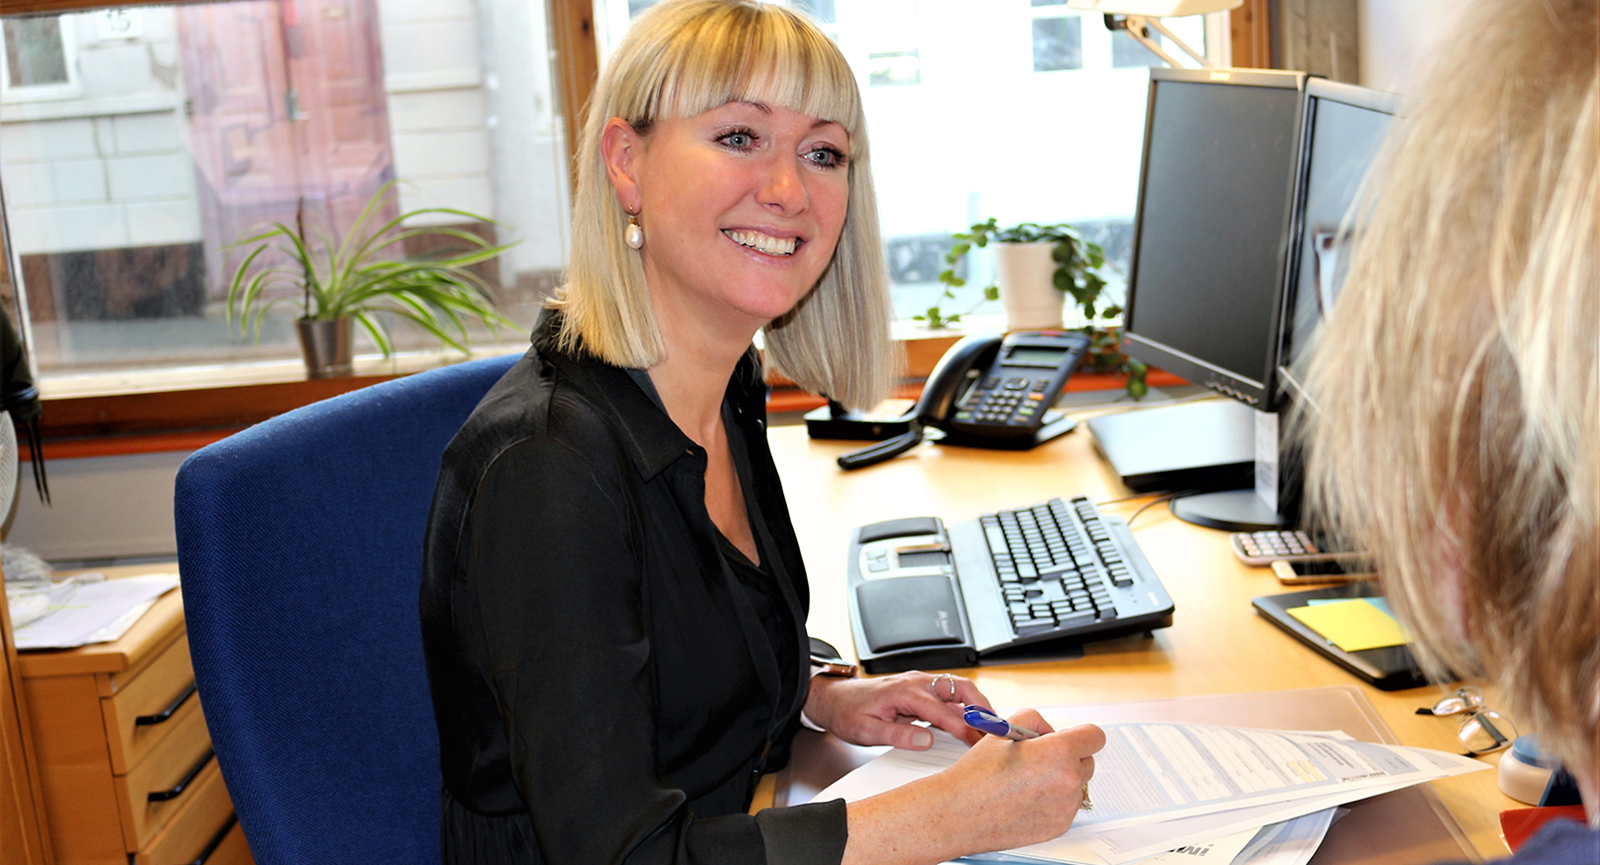 Administrationsøkonom Mette smiler til ukendt kvinde, mens hun sidder ved sit skrivebord og tager notater på papir